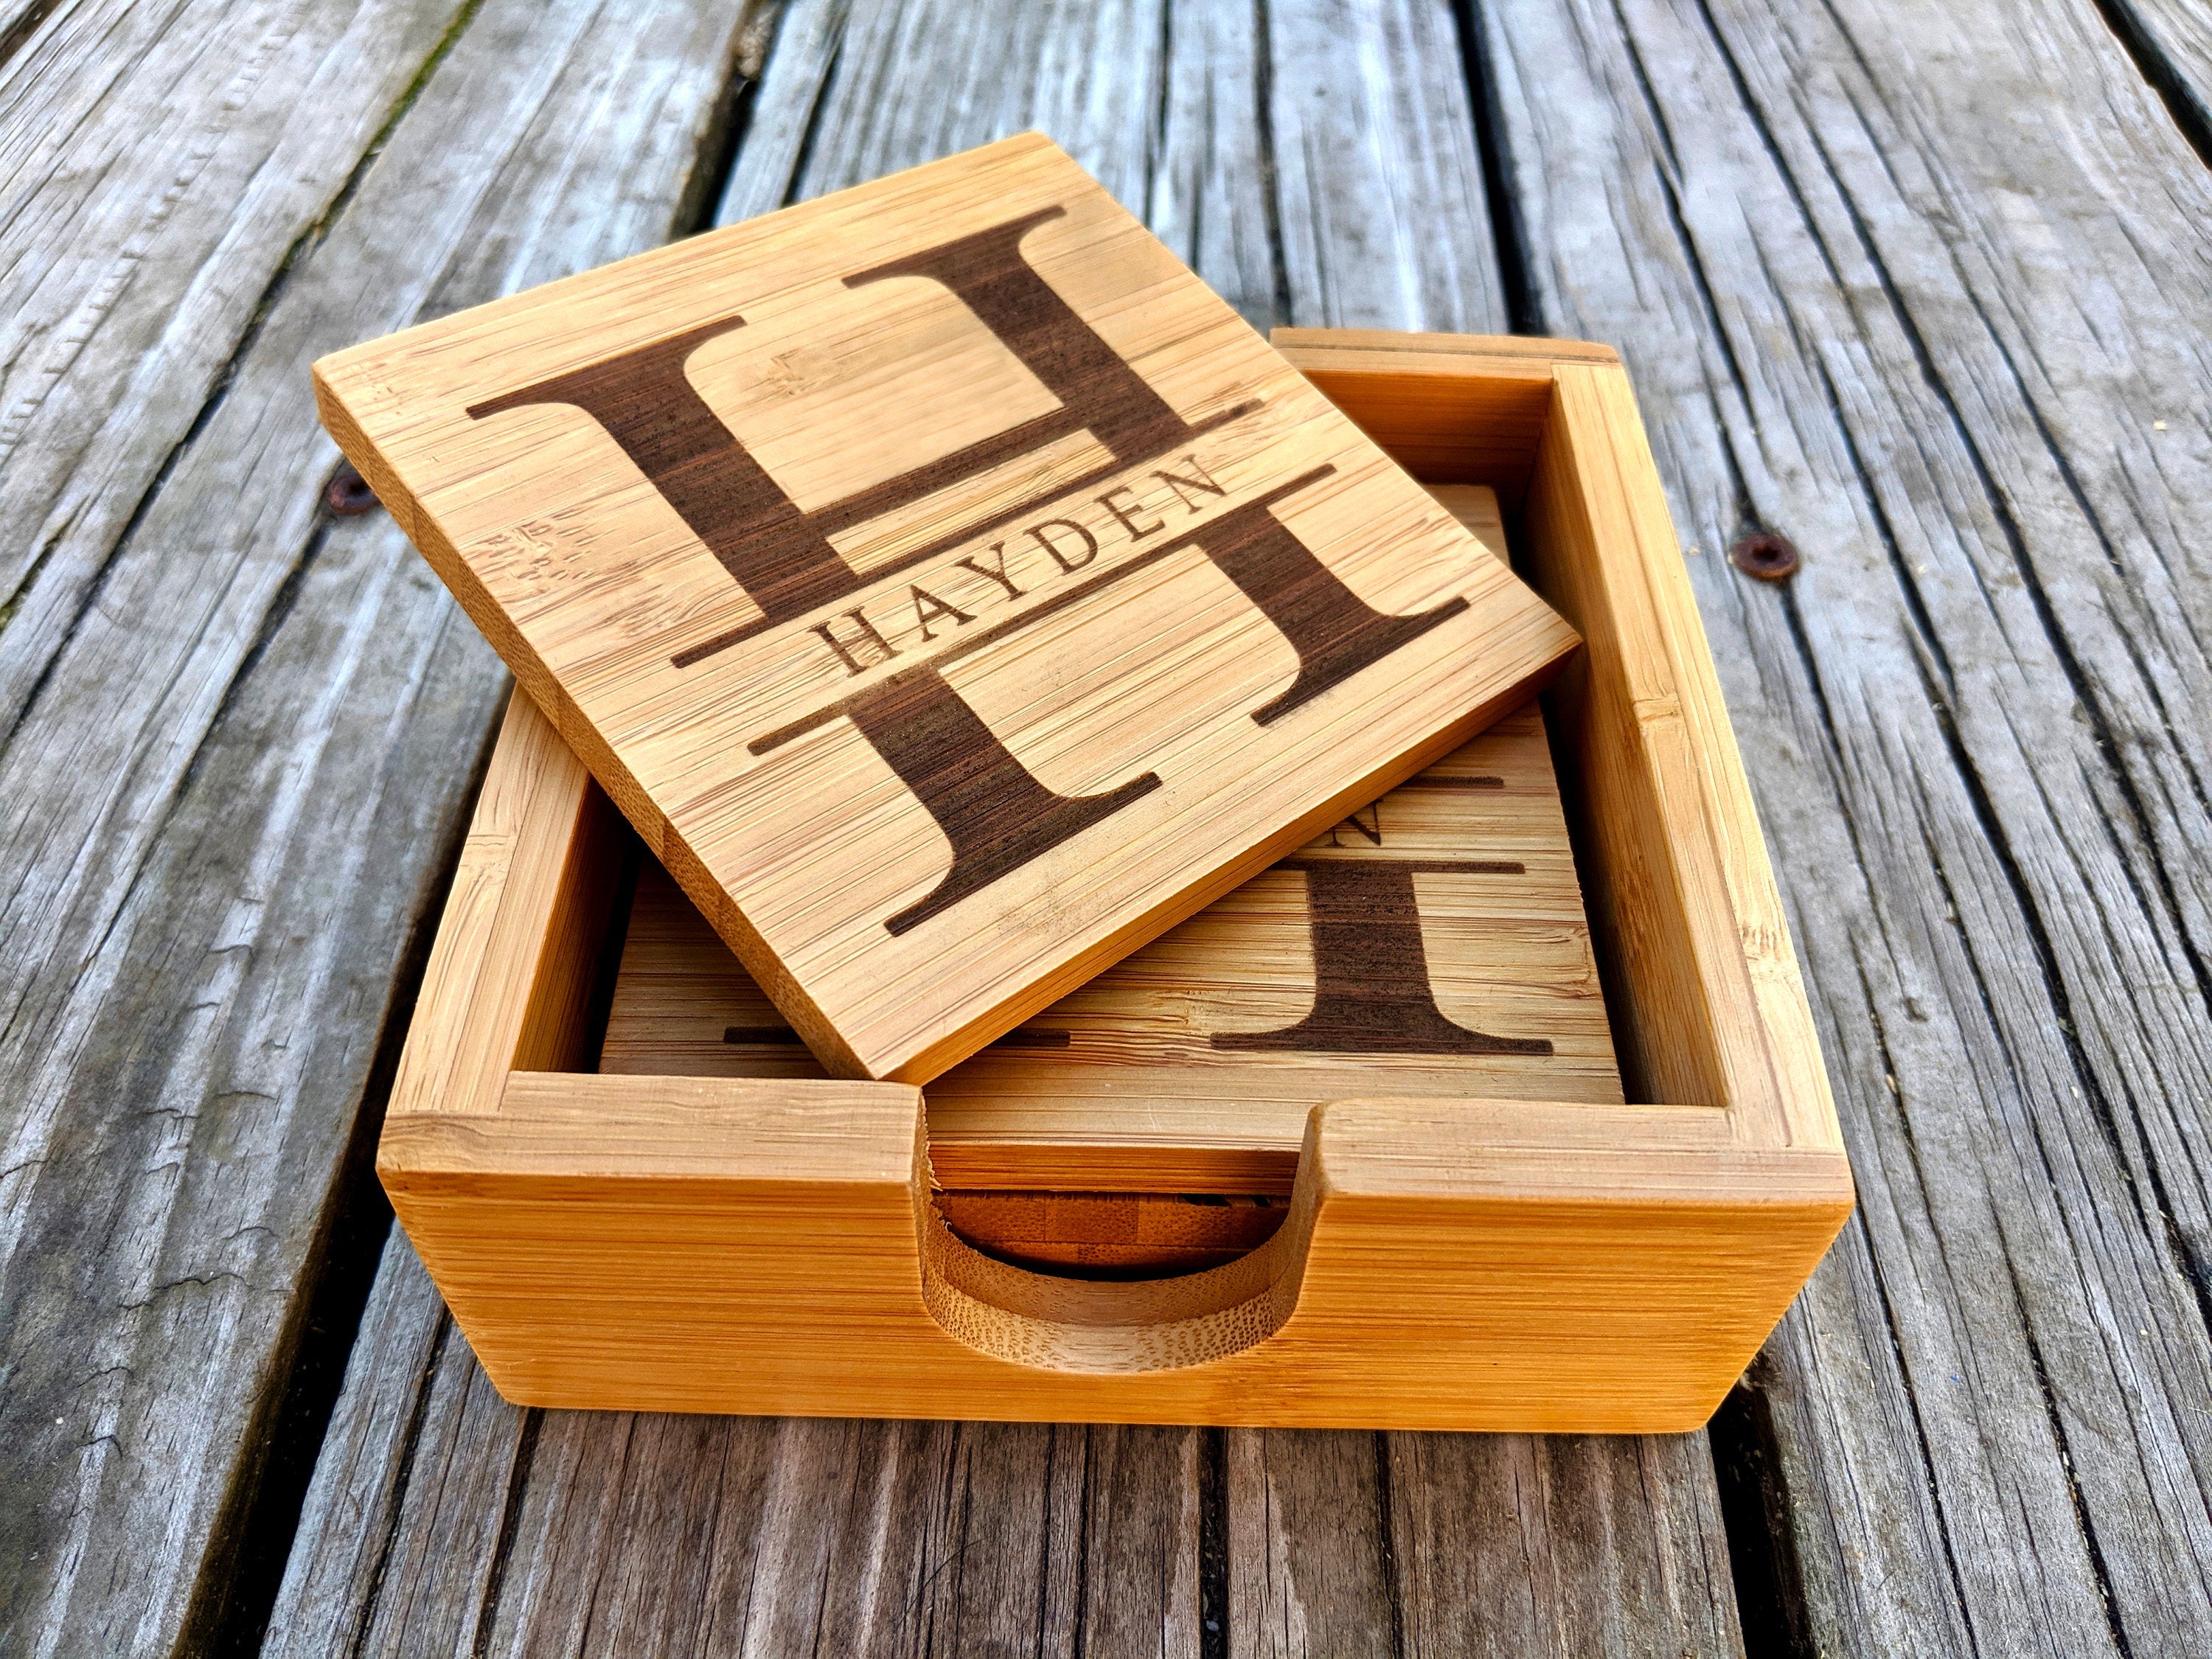 Personalized Wood Coasters / Engraved Coasters/ Custom Wood Coasters /  Wedding Gift / Housewarming / Coaster Set / Laser Engraved 